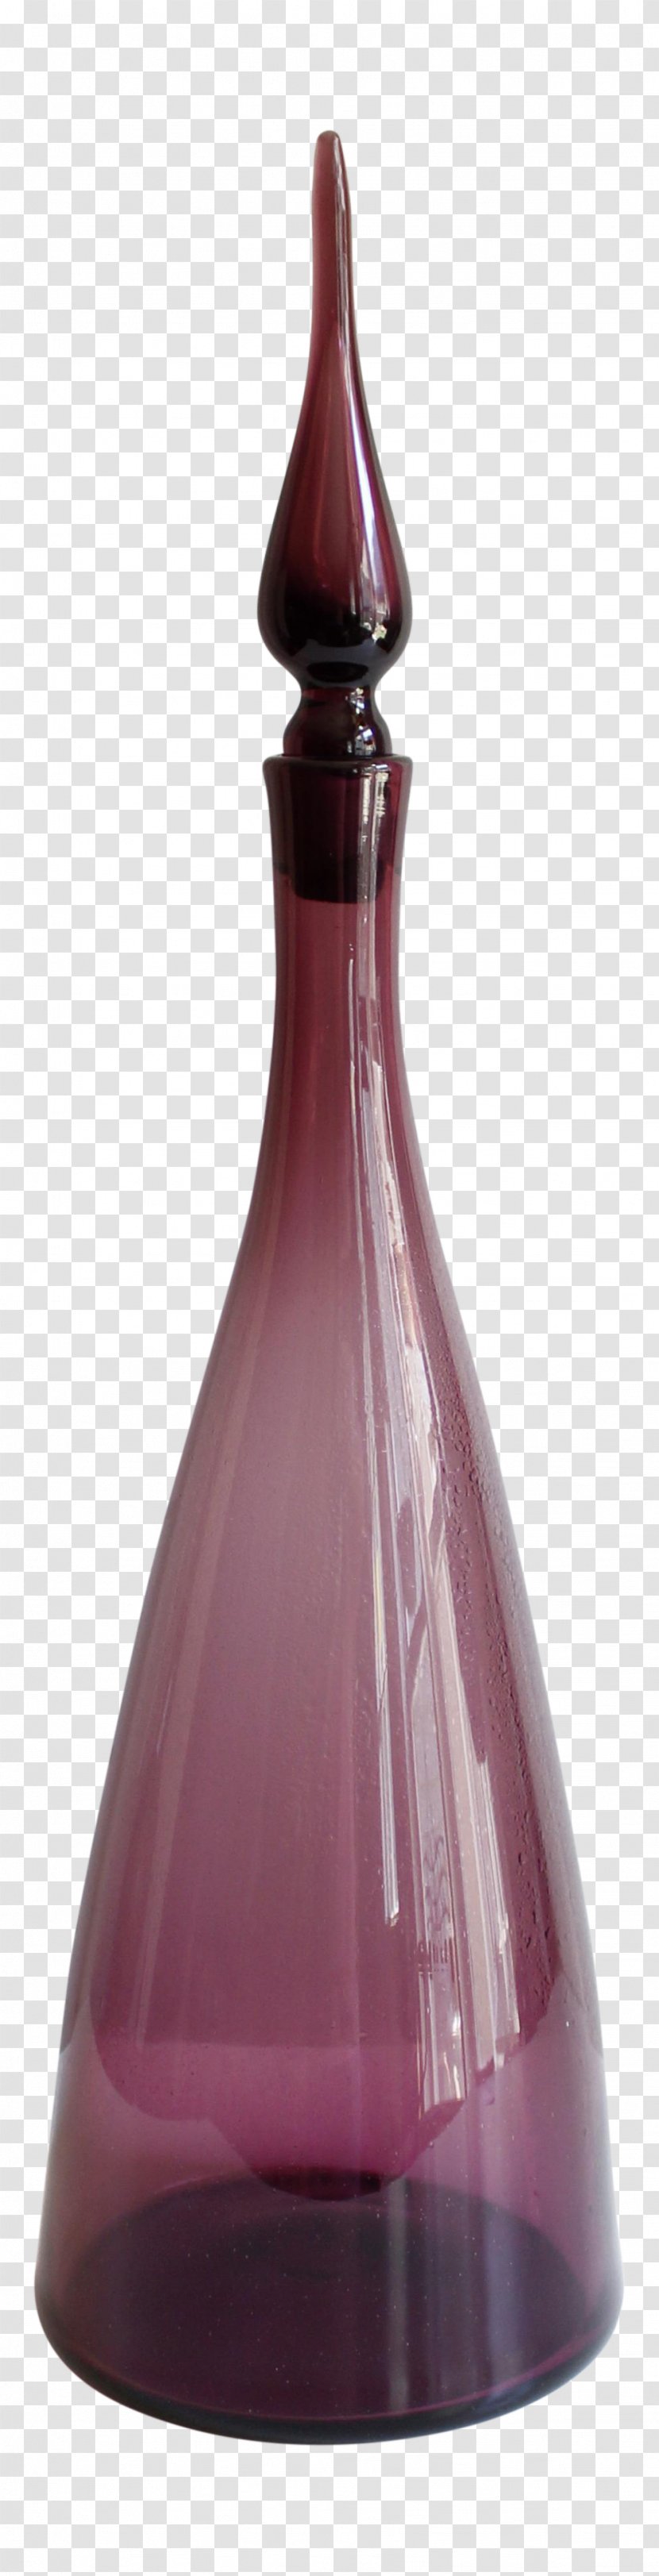 Glass Bottle Transparent PNG